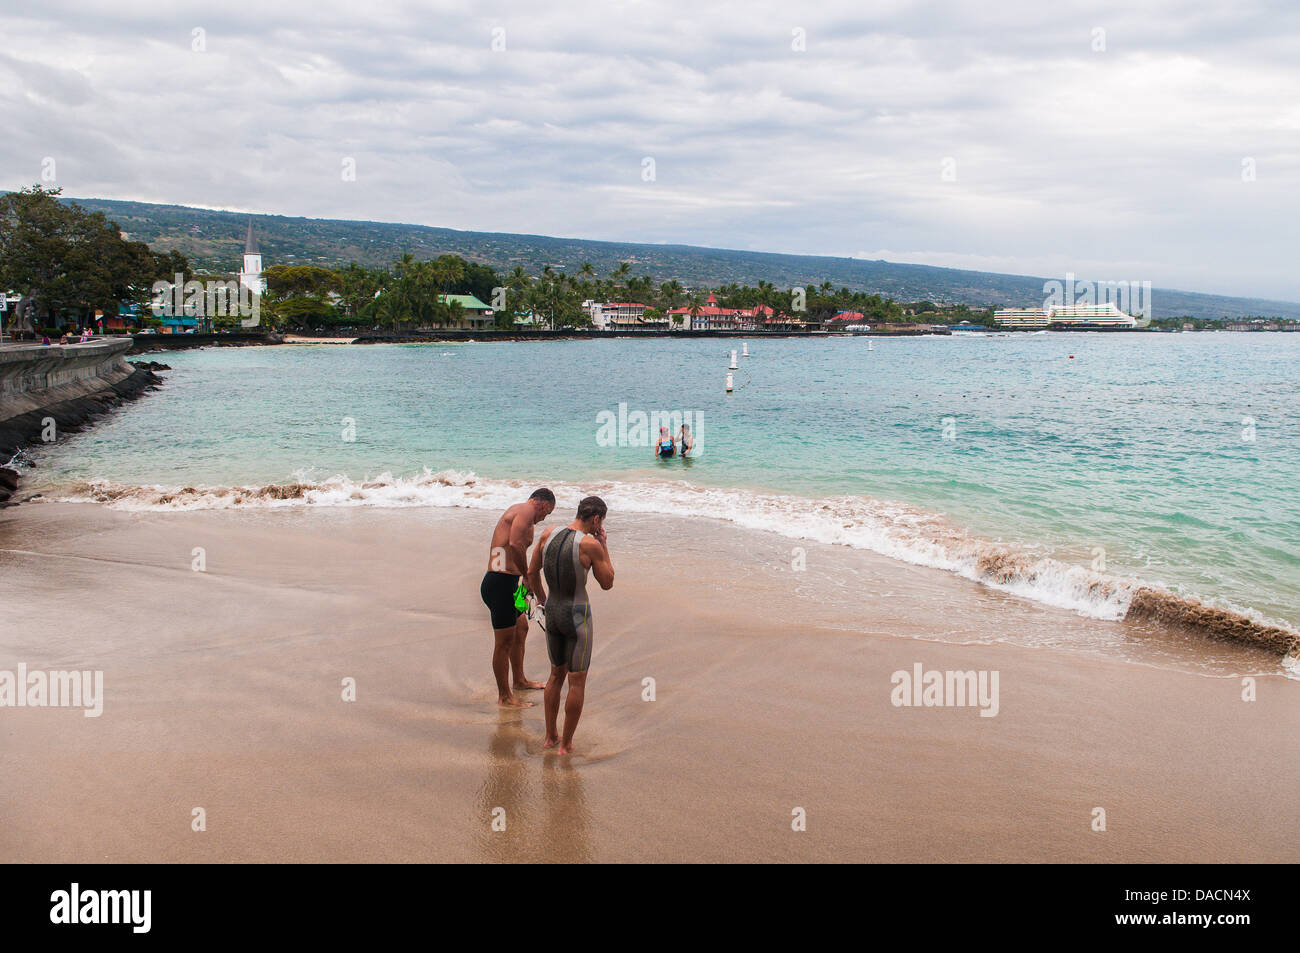 Les nageurs sur la plage, à l'arrivée officielle de l'Ironman Triathlon cours, Kailua-Kona, Hawaii (pas pris le jour de la course) Banque D'Images